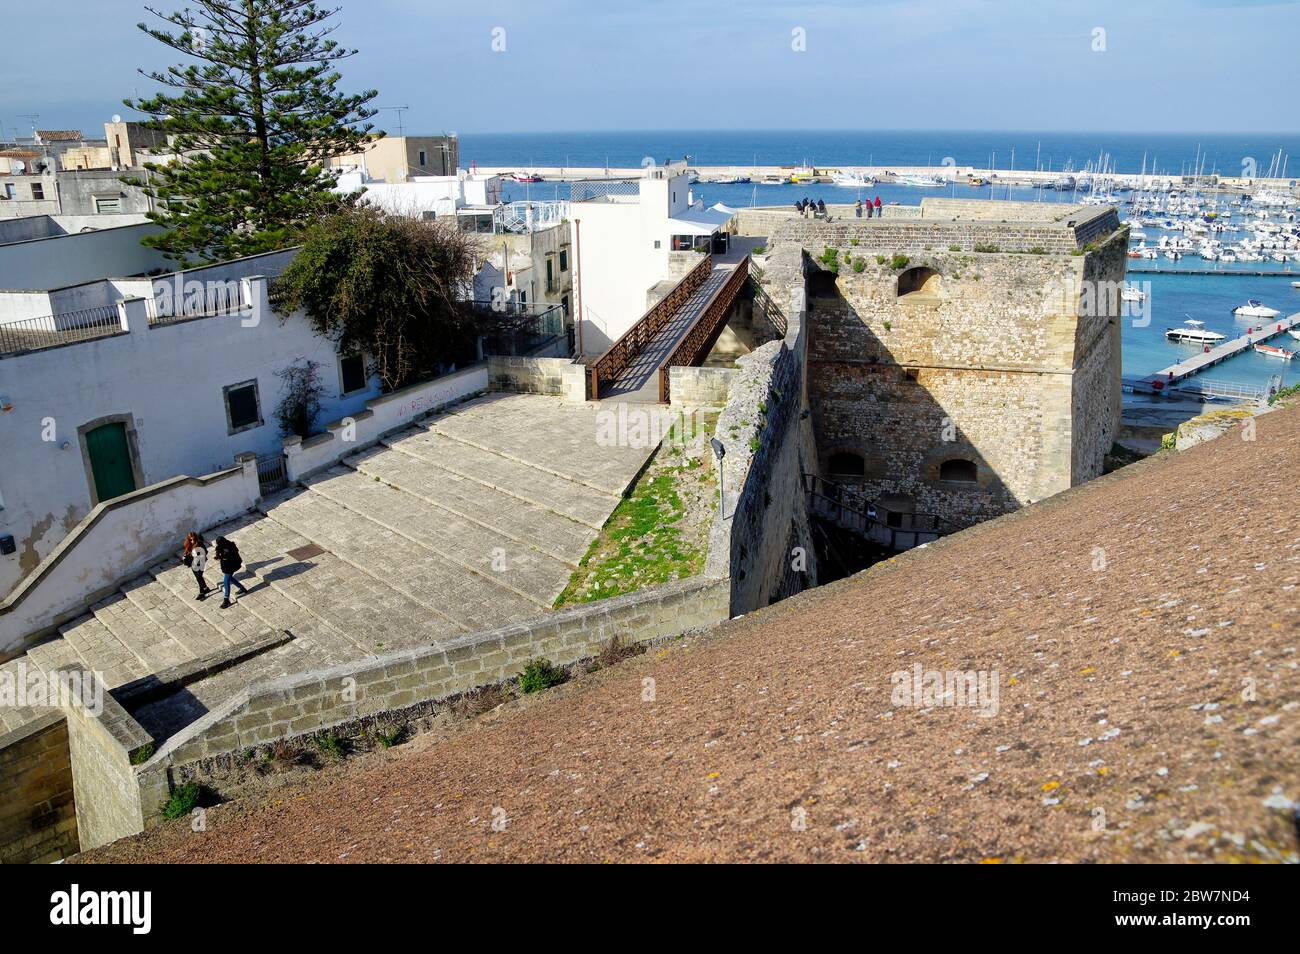 OTRANTO, APULIA, ITALIA - 30 DE MARZO de 2018: Un maravilloso paisaje urbano de la ciudad de Otranto desde las murallas del Castillo Aragonés medieval en Otranto, Apulia, Italia Foto de stock